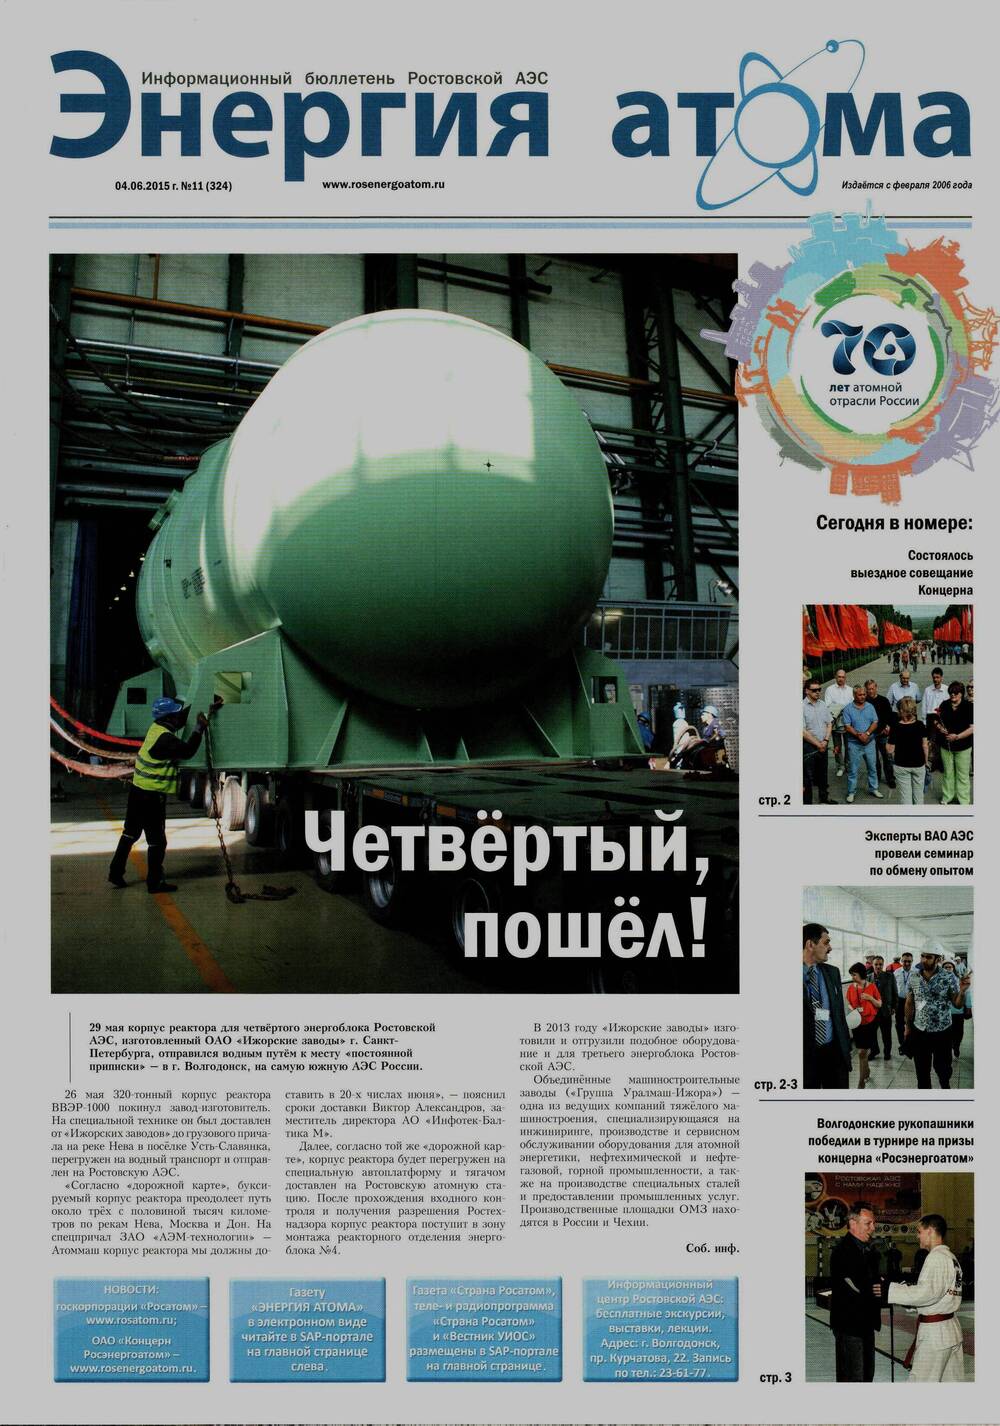 Газета Энергия атома №11 (324). Информационный бюллетень Ростовской АЭС